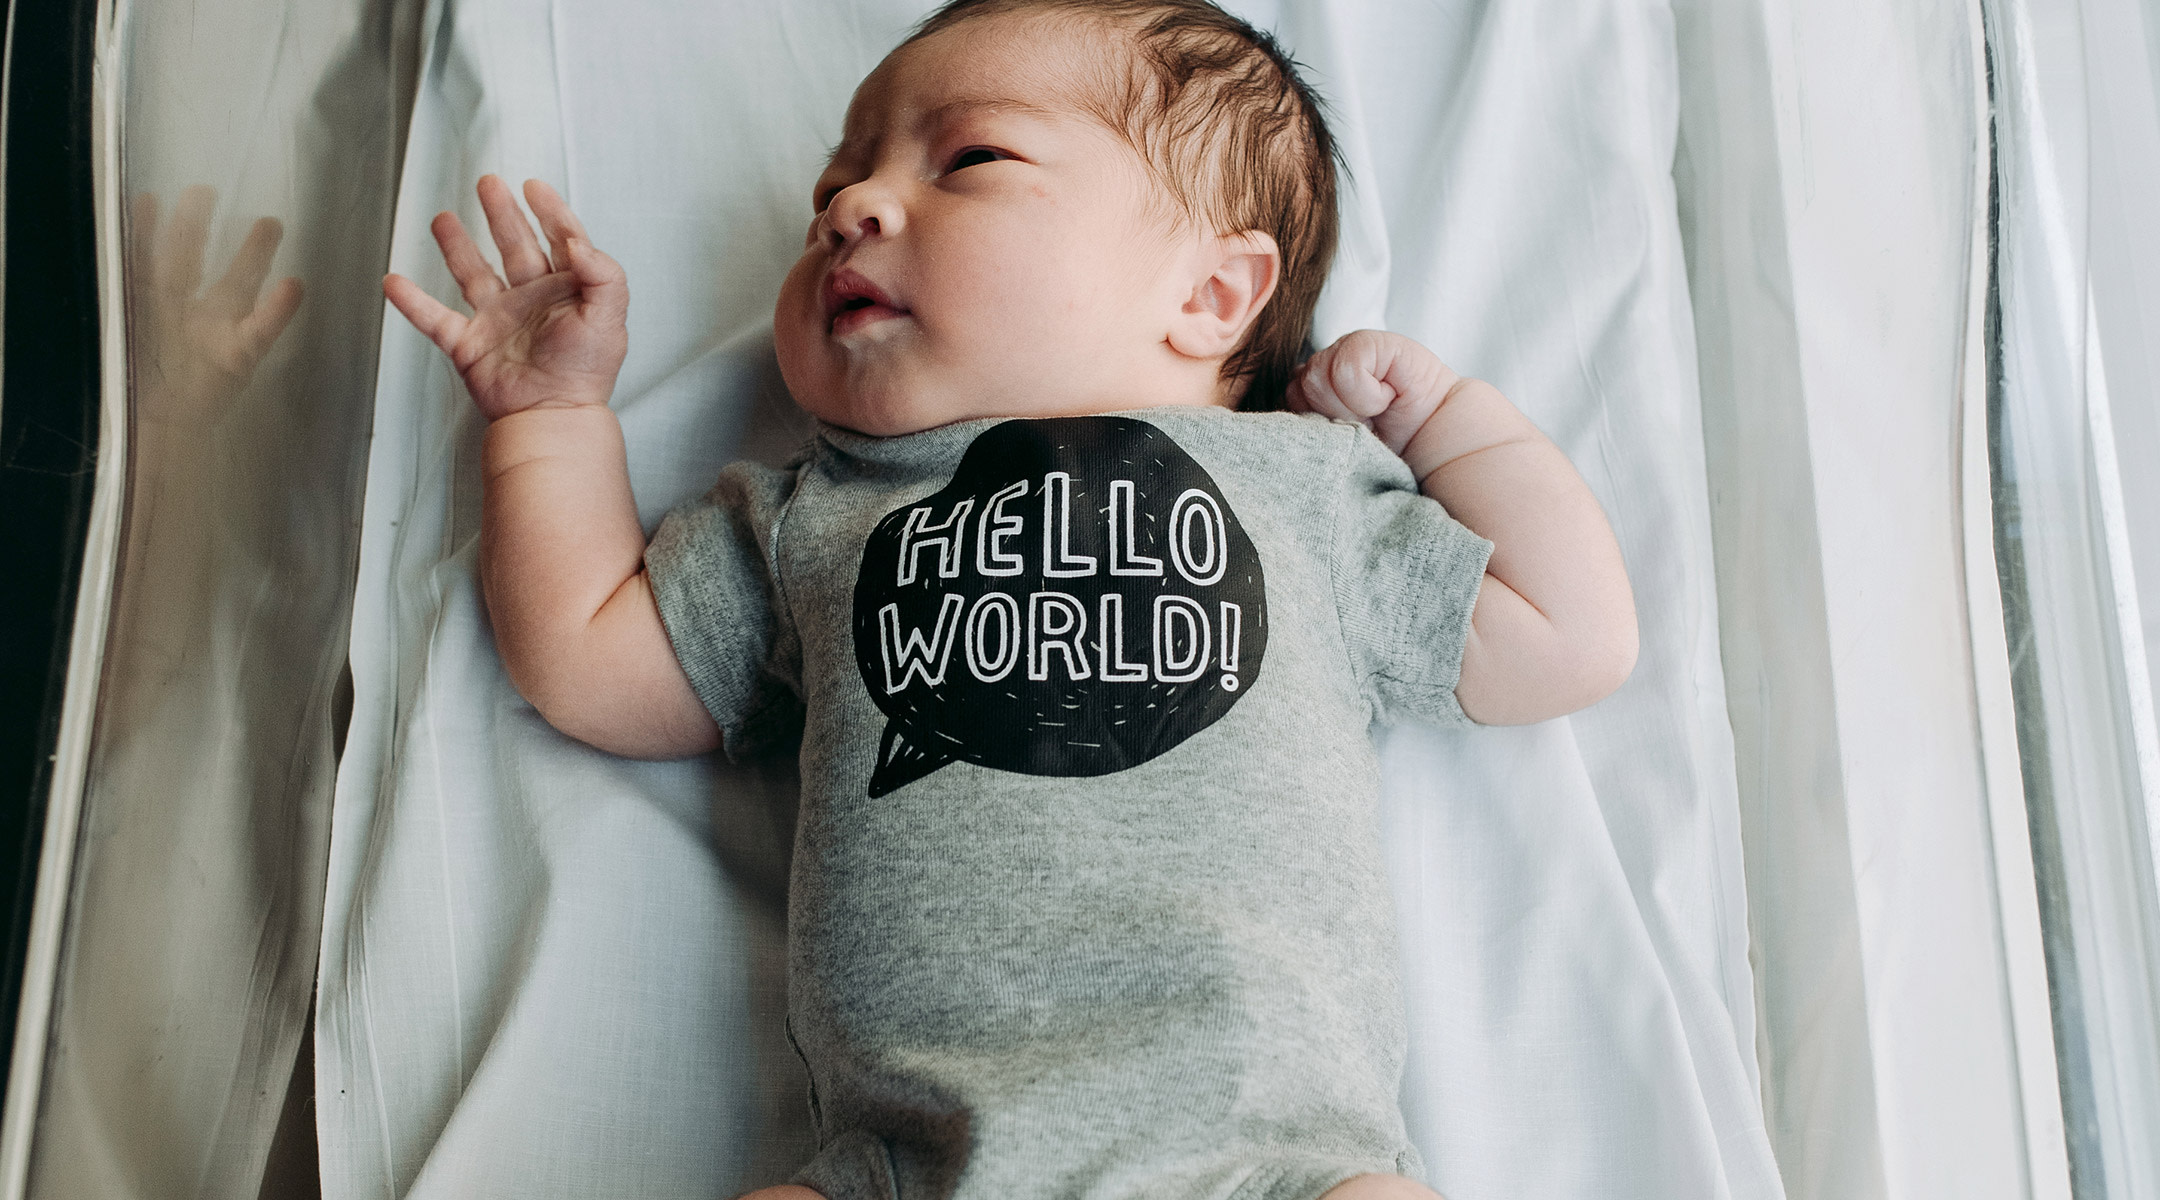 newborn baby in the hospital wearing a hello world onesie